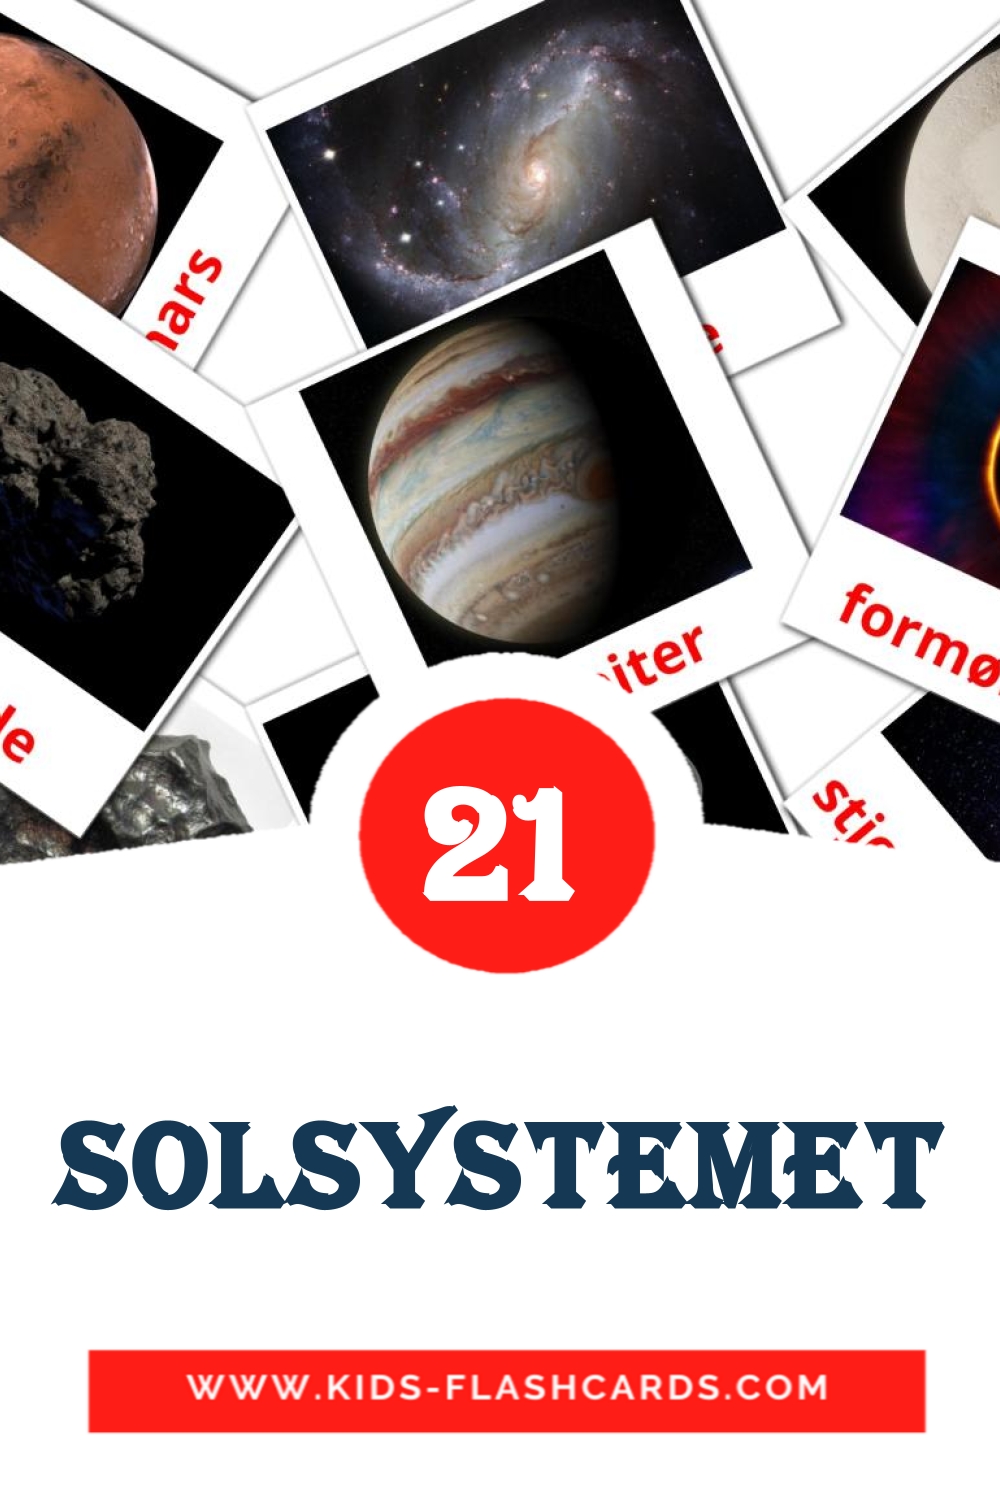 21 Solsystemet fotokaarten voor kleuters in het noors